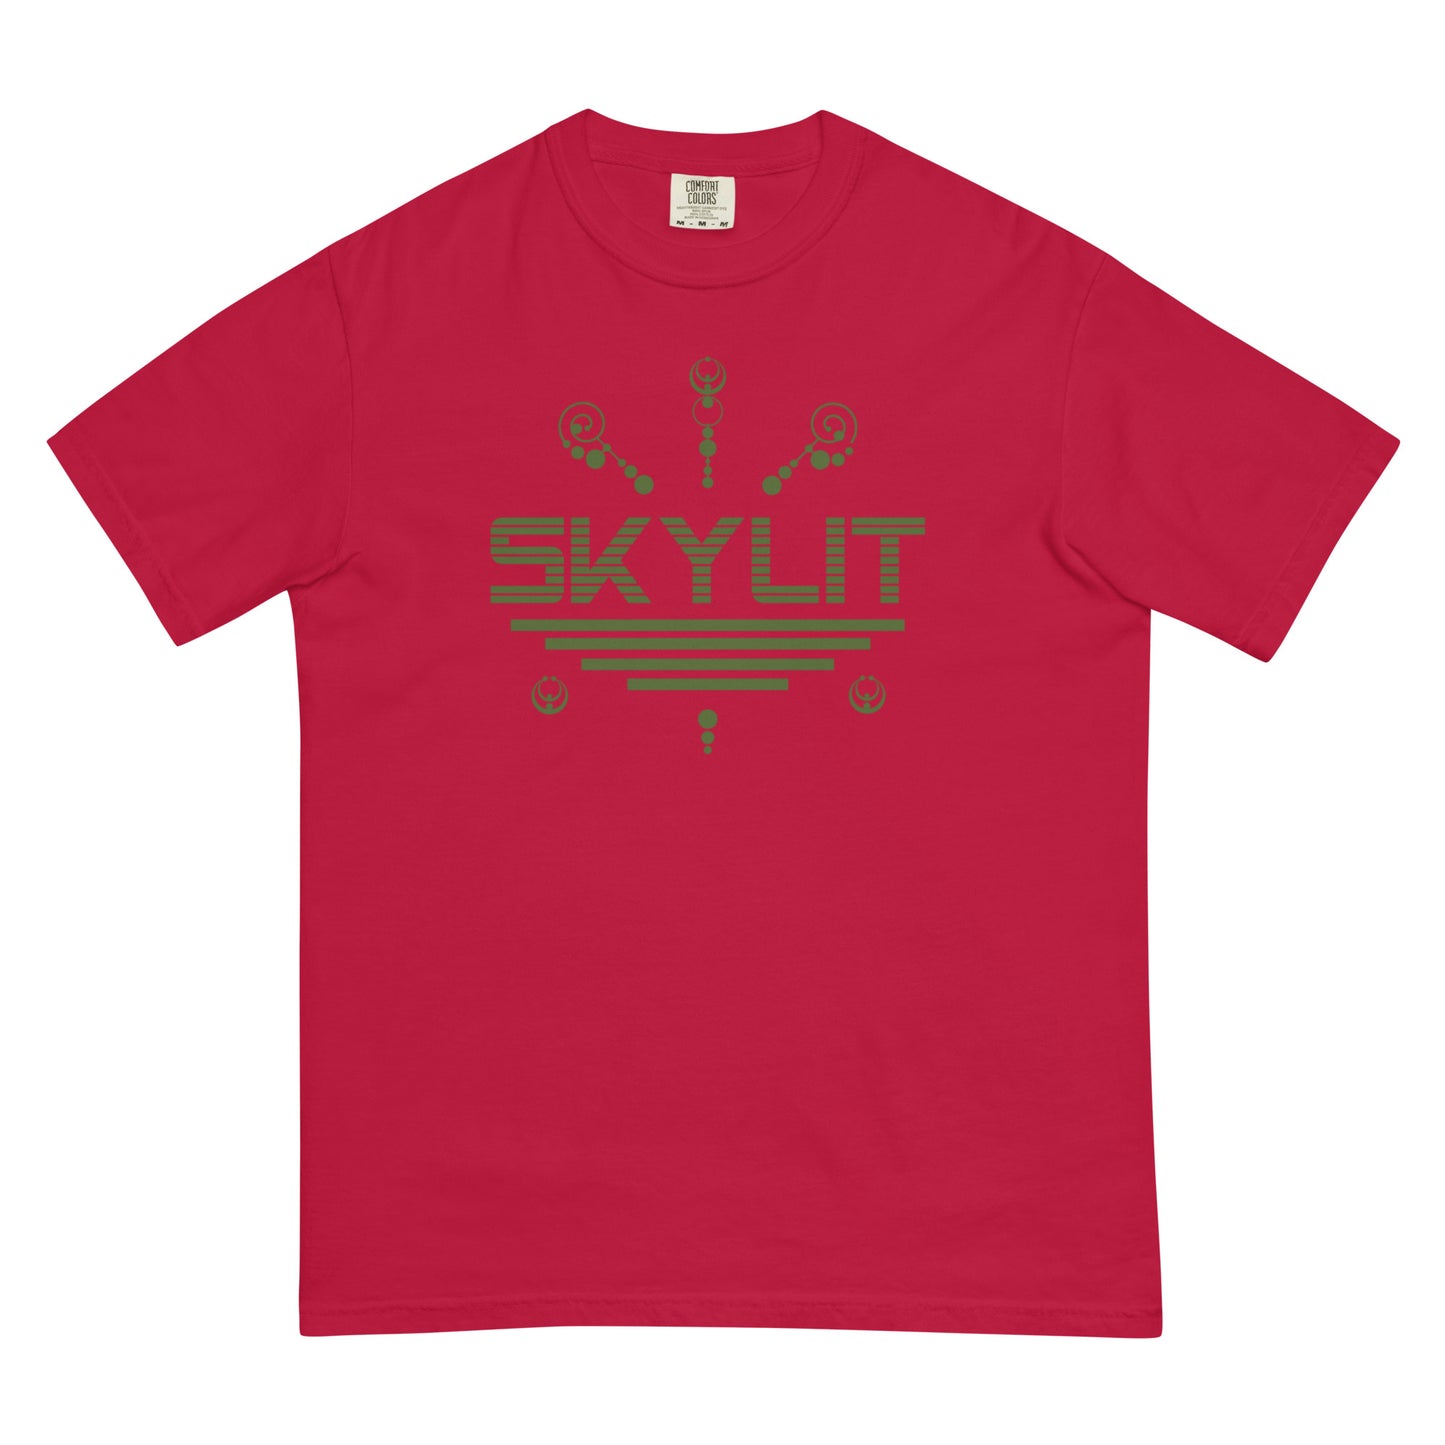 Men’s Skylit Crop Circle t-shirt